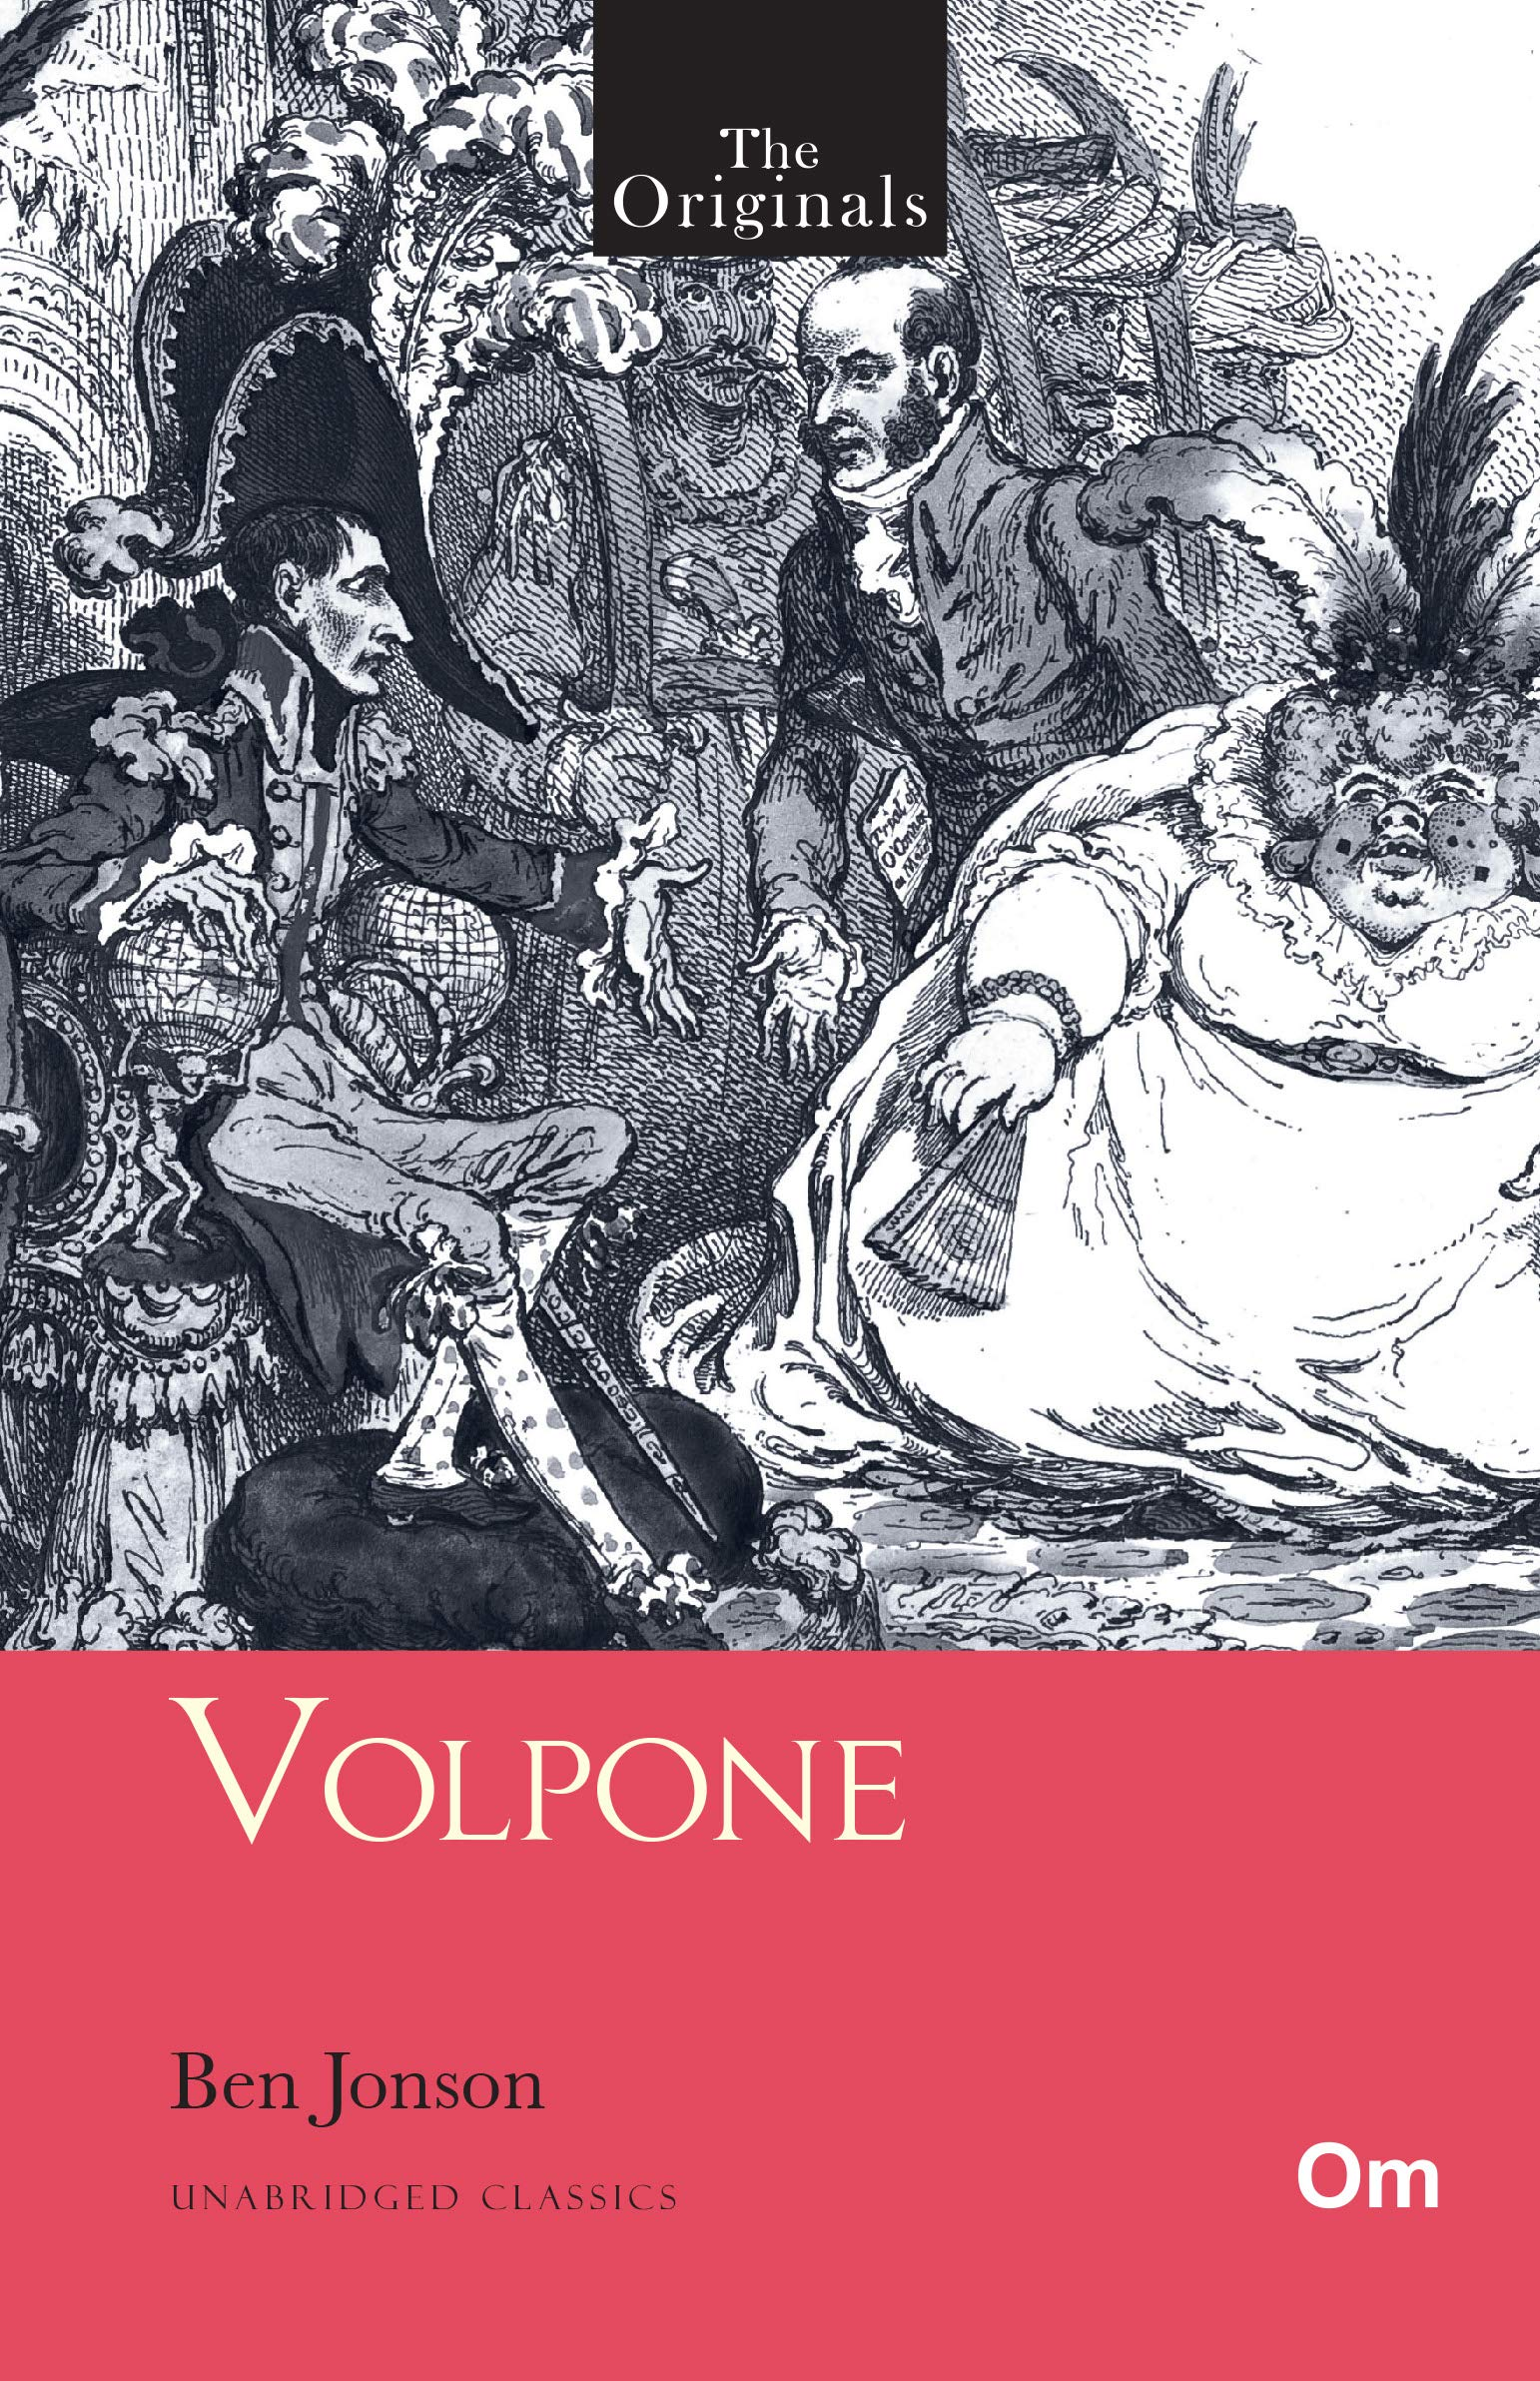 Ben Jonson, Volpone, a dark comedy?